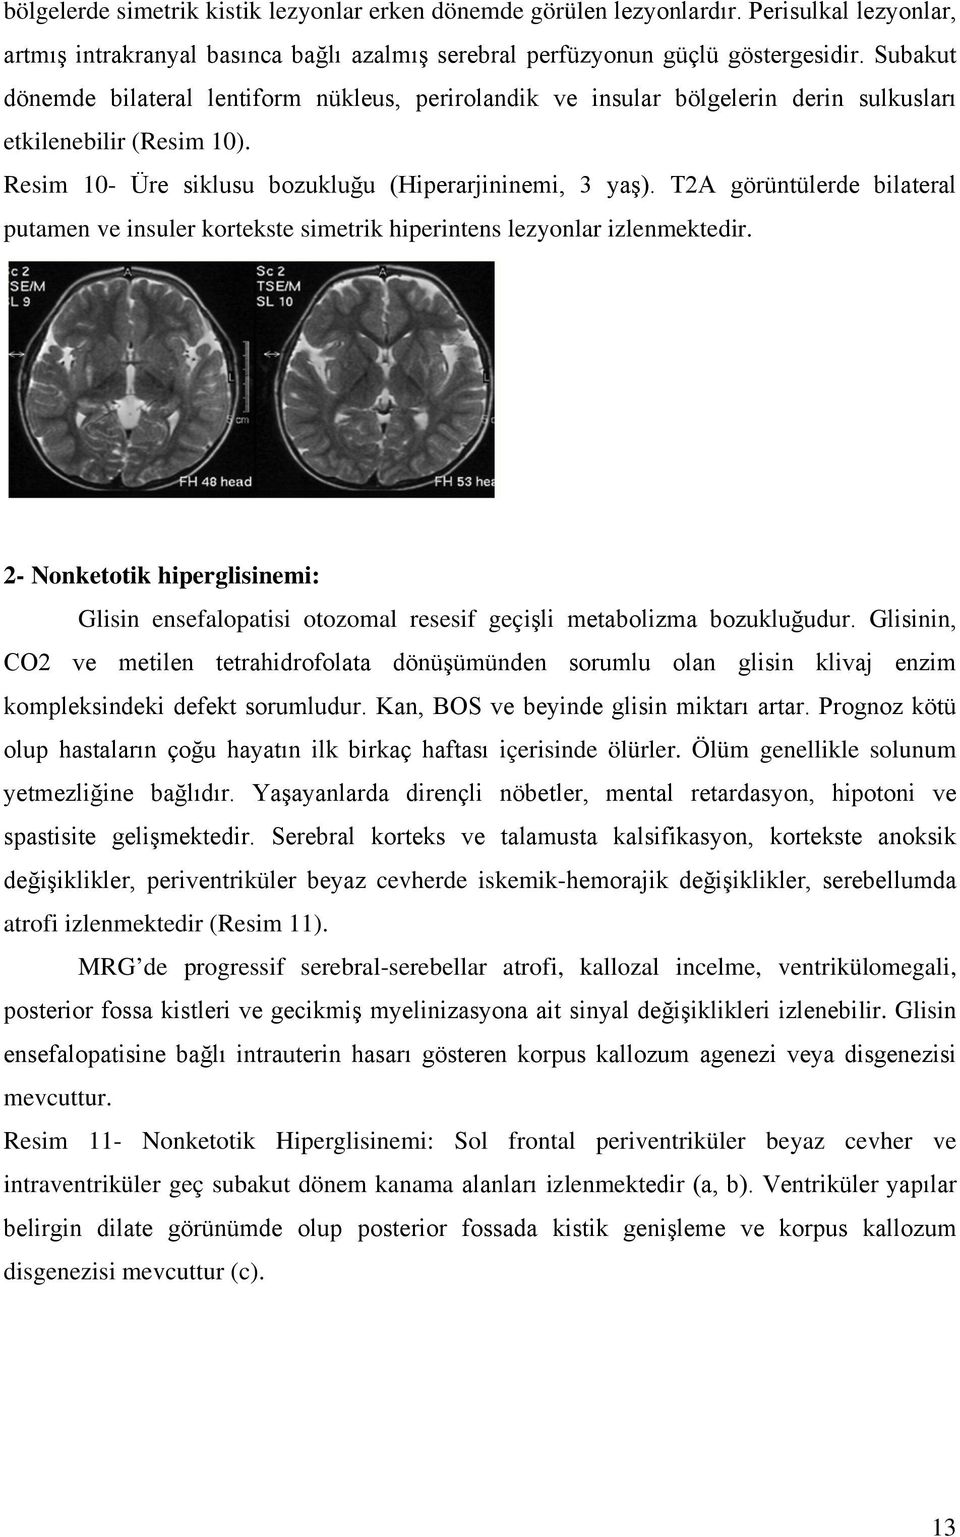 T2A görüntülerde bilateral putamen ve insuler kortekste simetrik hiperintens lezyonlar izlenmektedir.